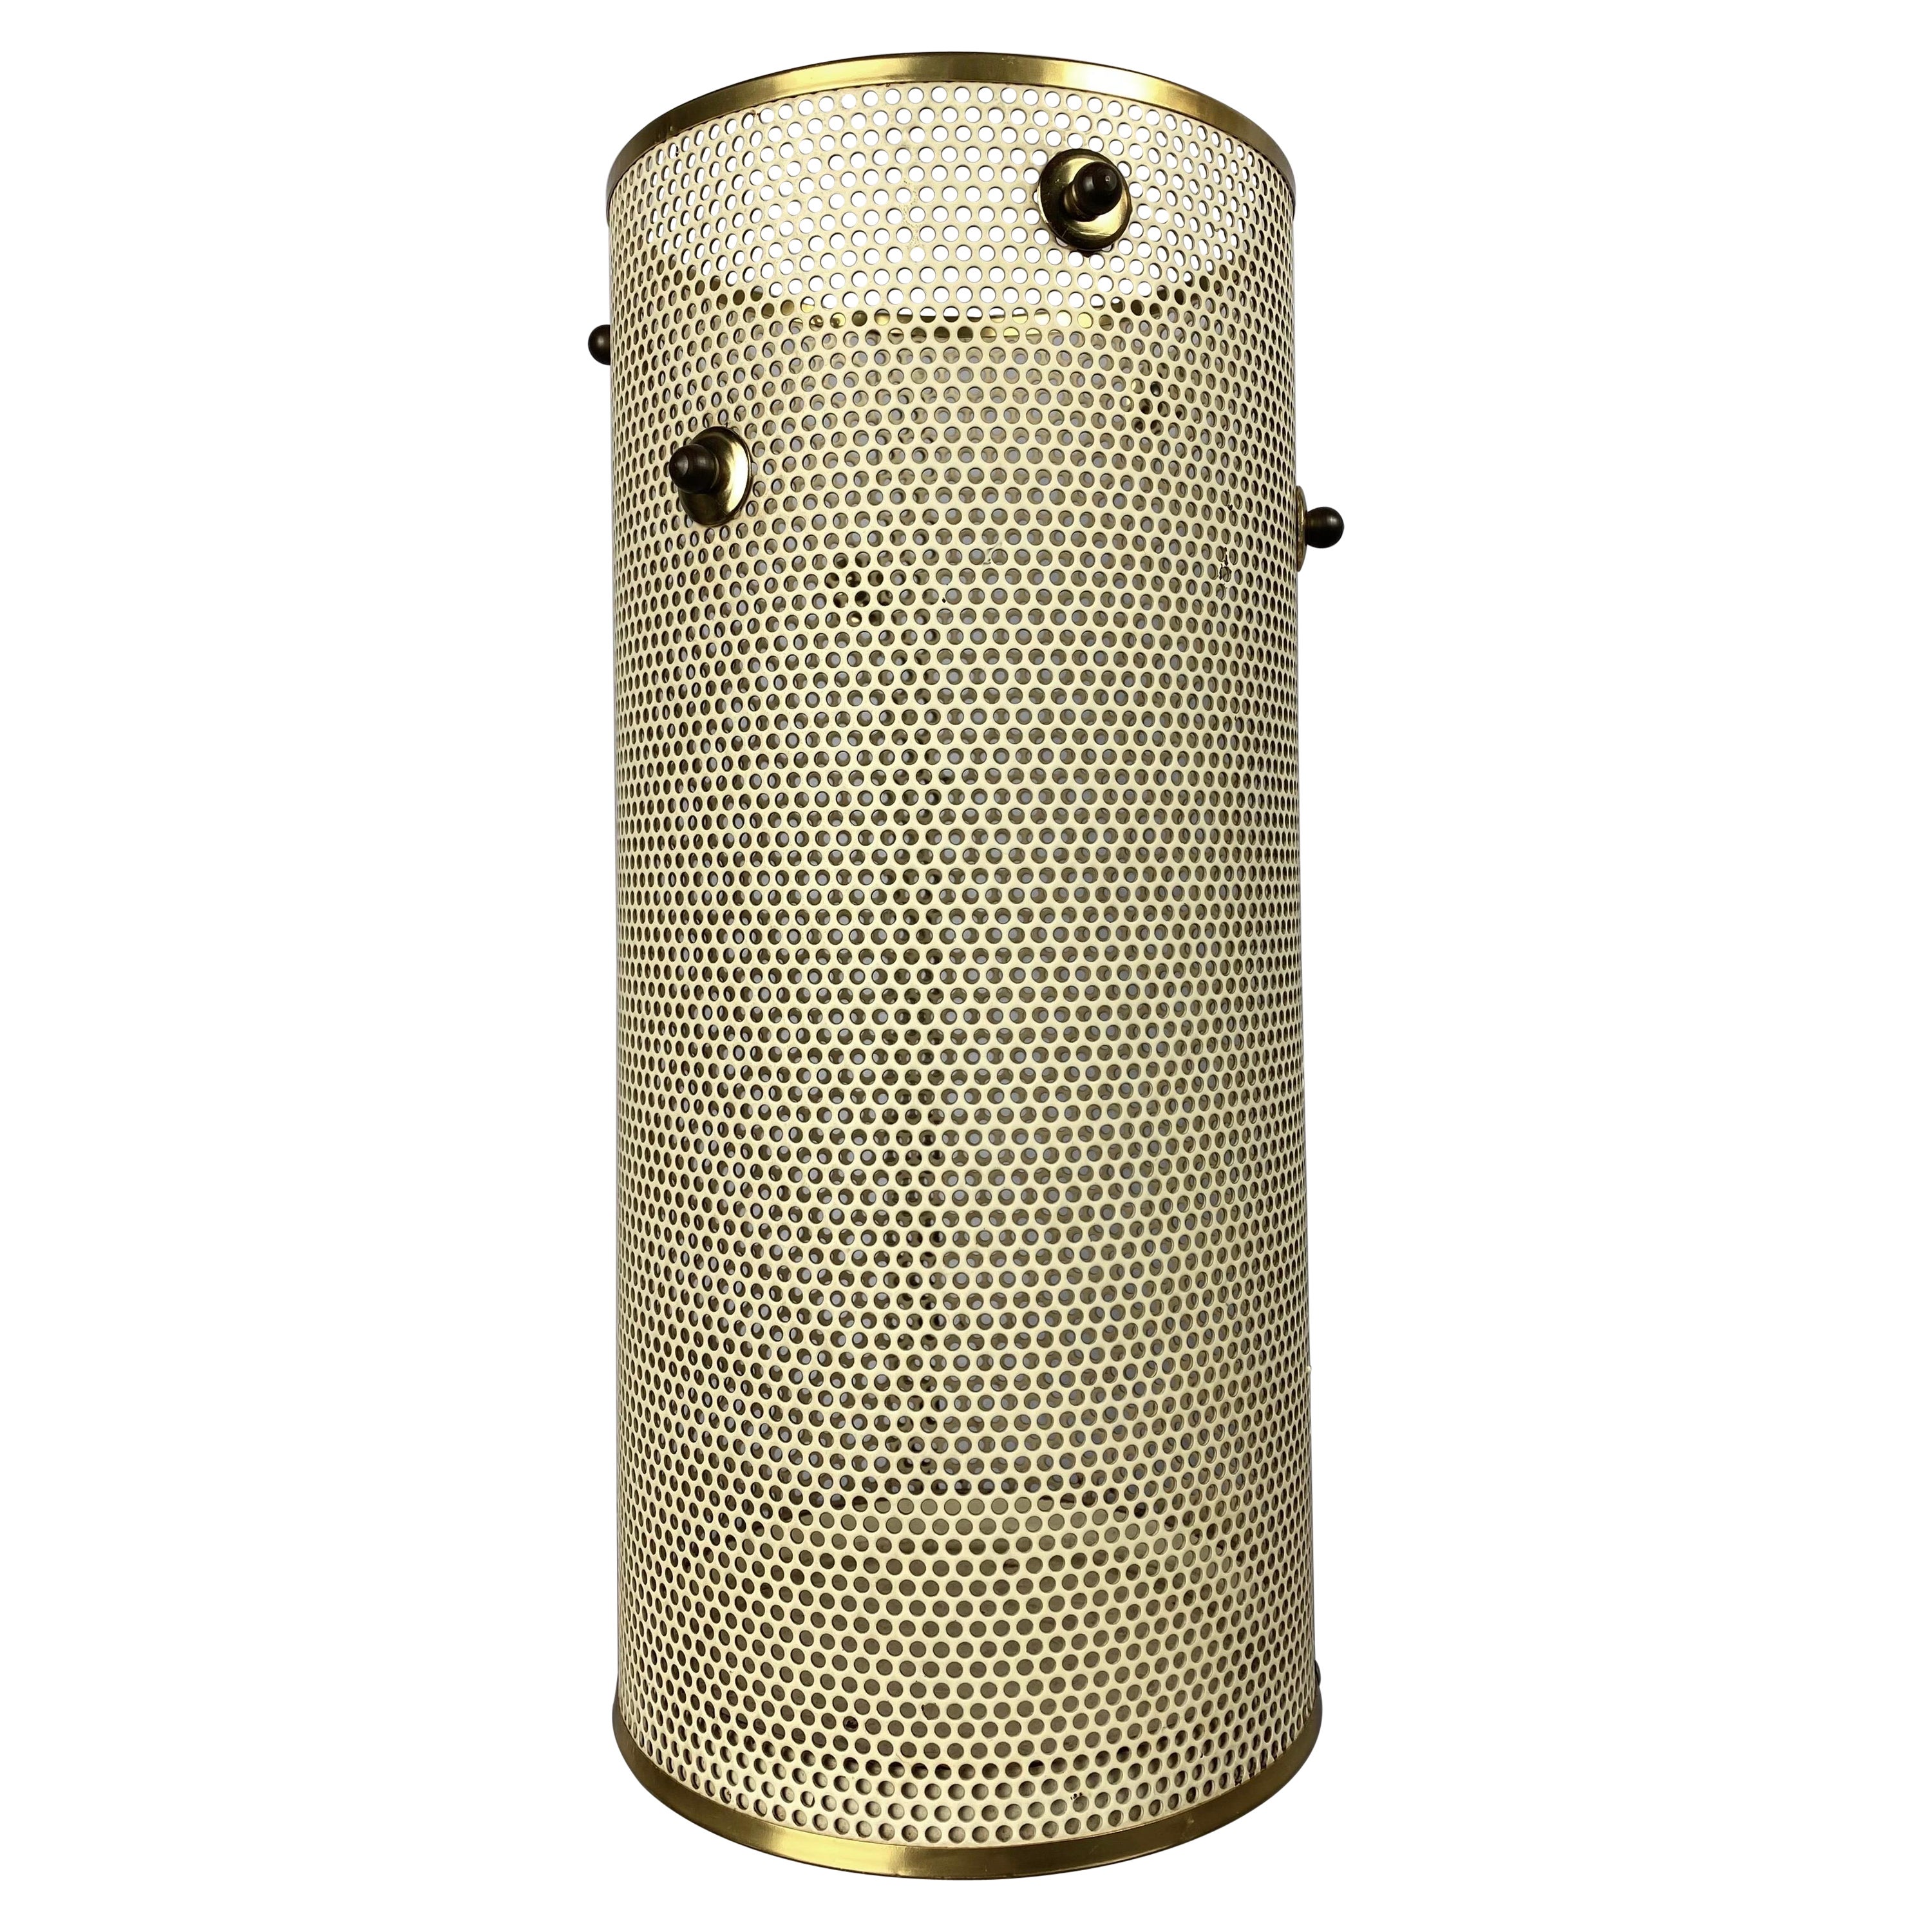 Schirmständer Mategot 50er Jahre zylindrische Vase aus perforiertem Metall mit goldenen Details 